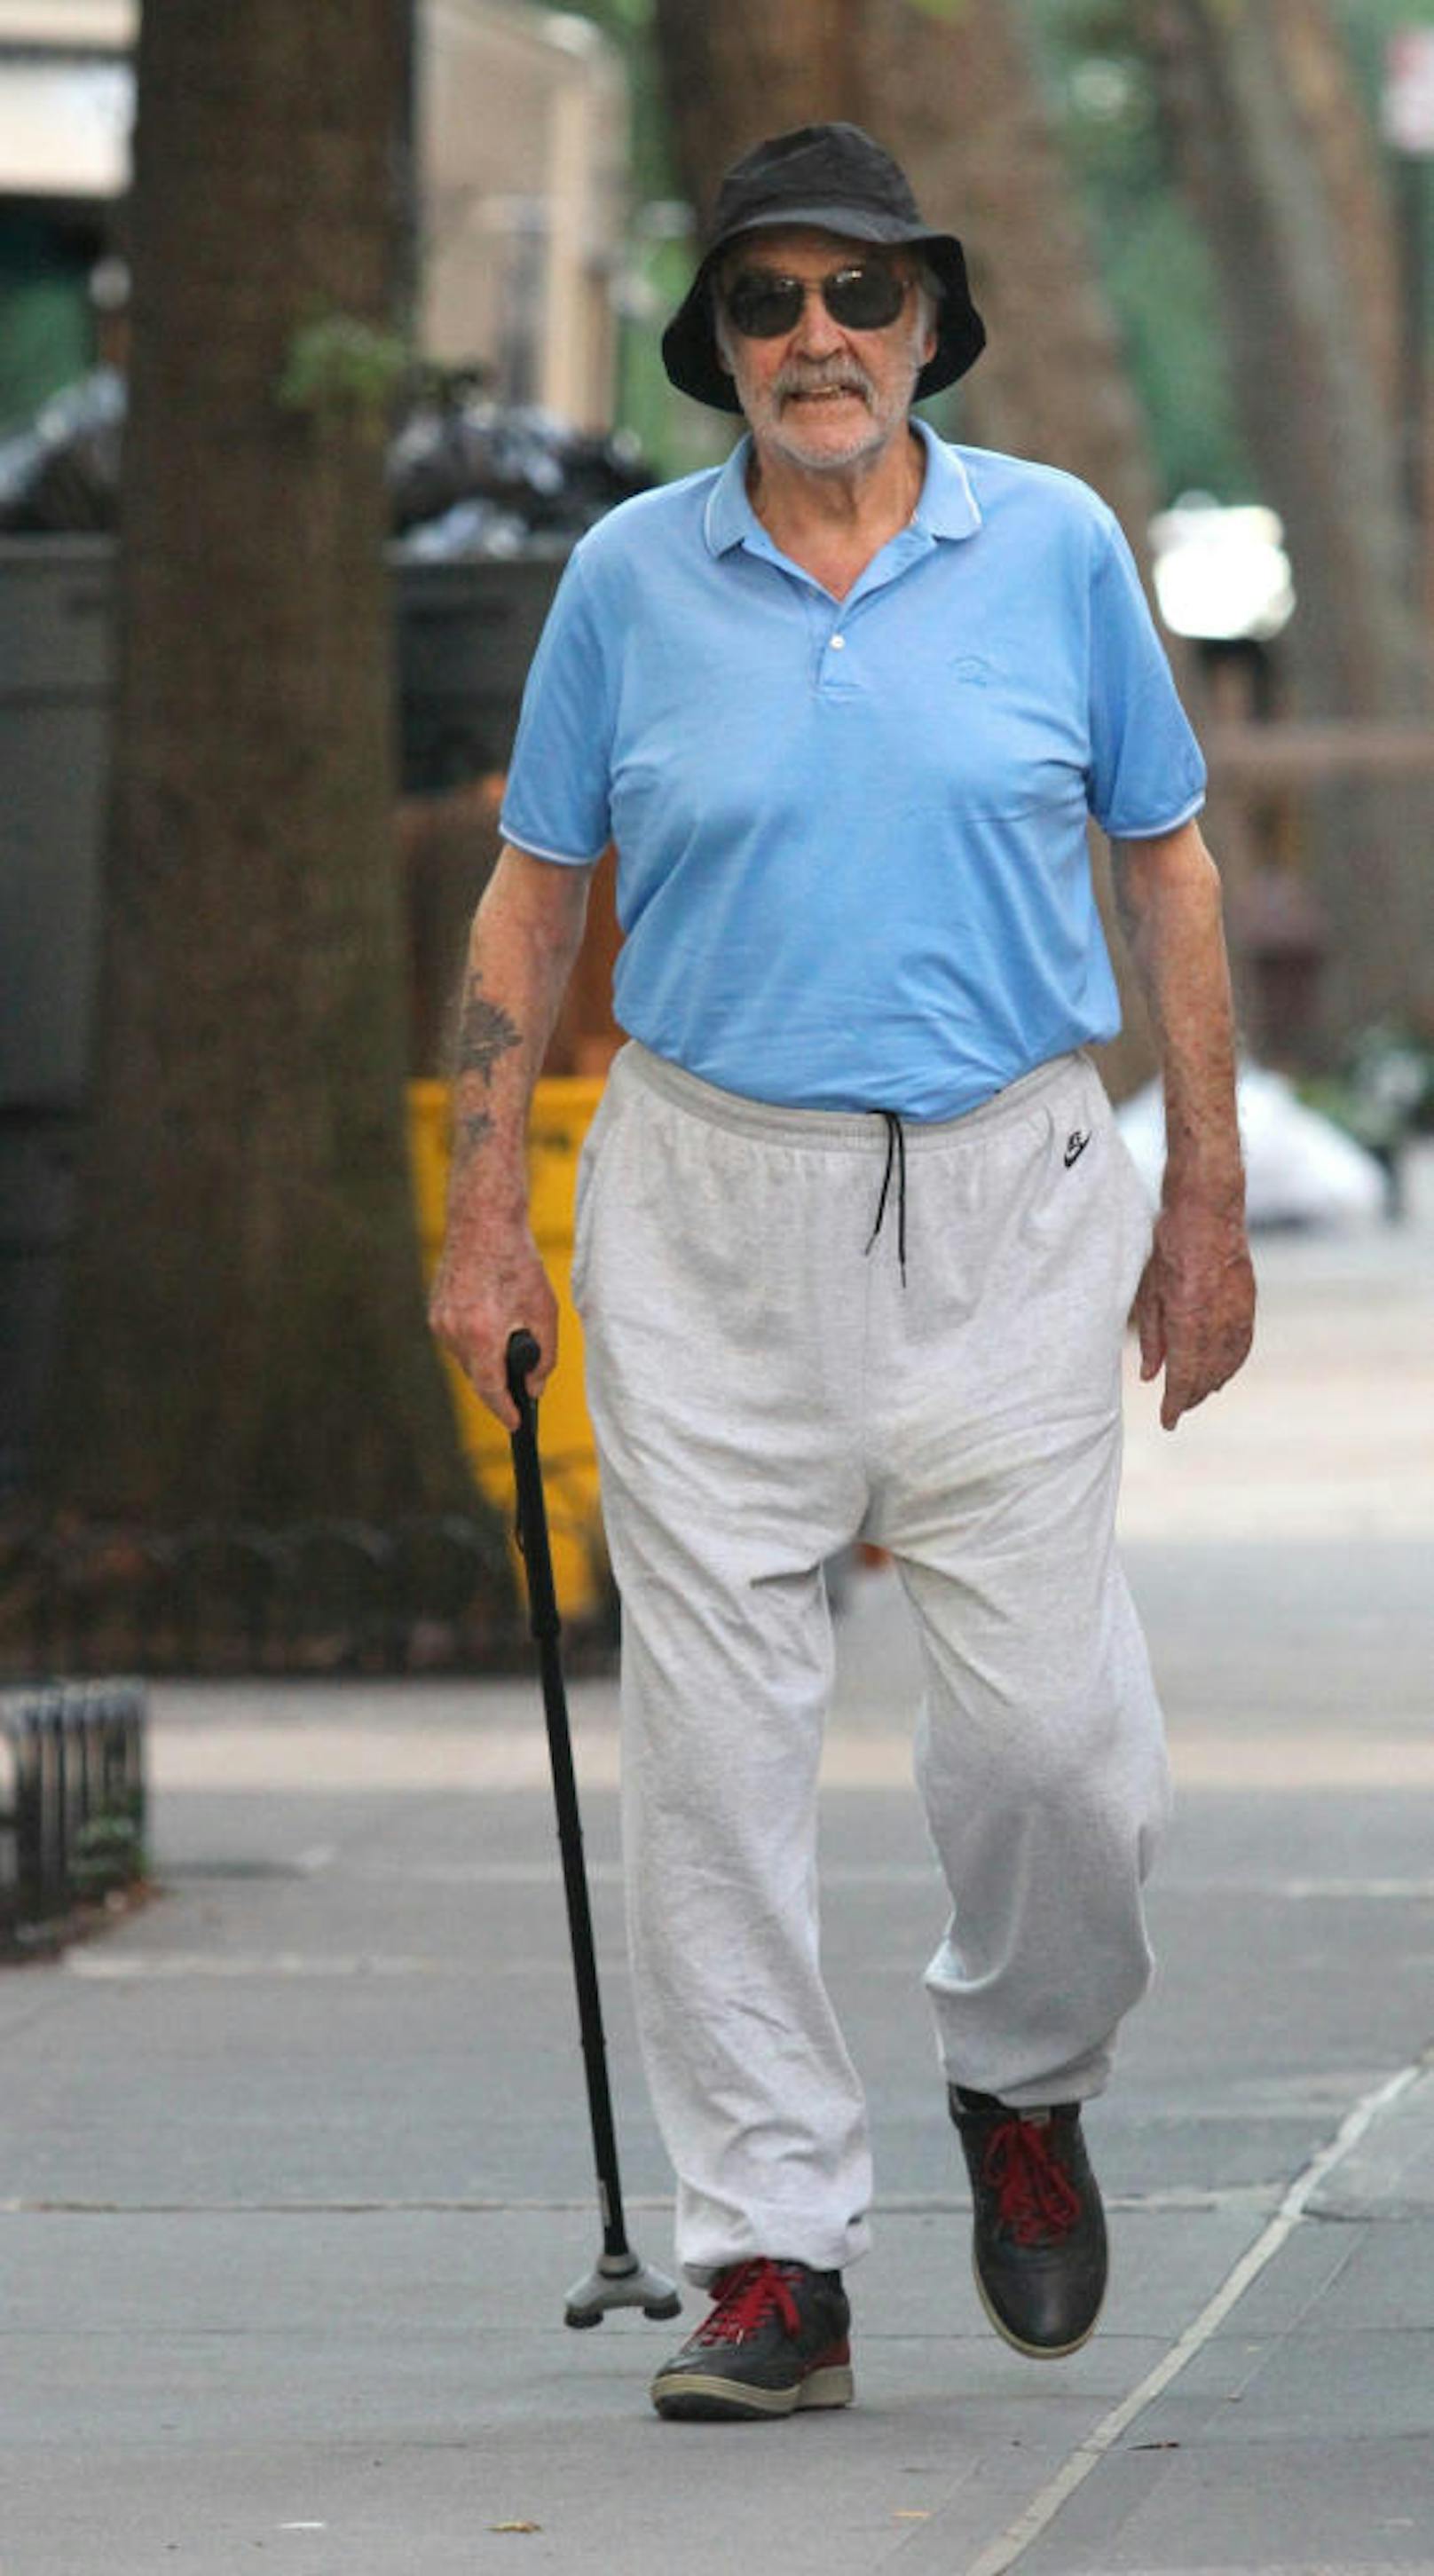 Stock und Hut, die steh'n ihm gut: Sean Connery wurde bei einem frühmorgentlichen Spaziergang in New York City entdeckt